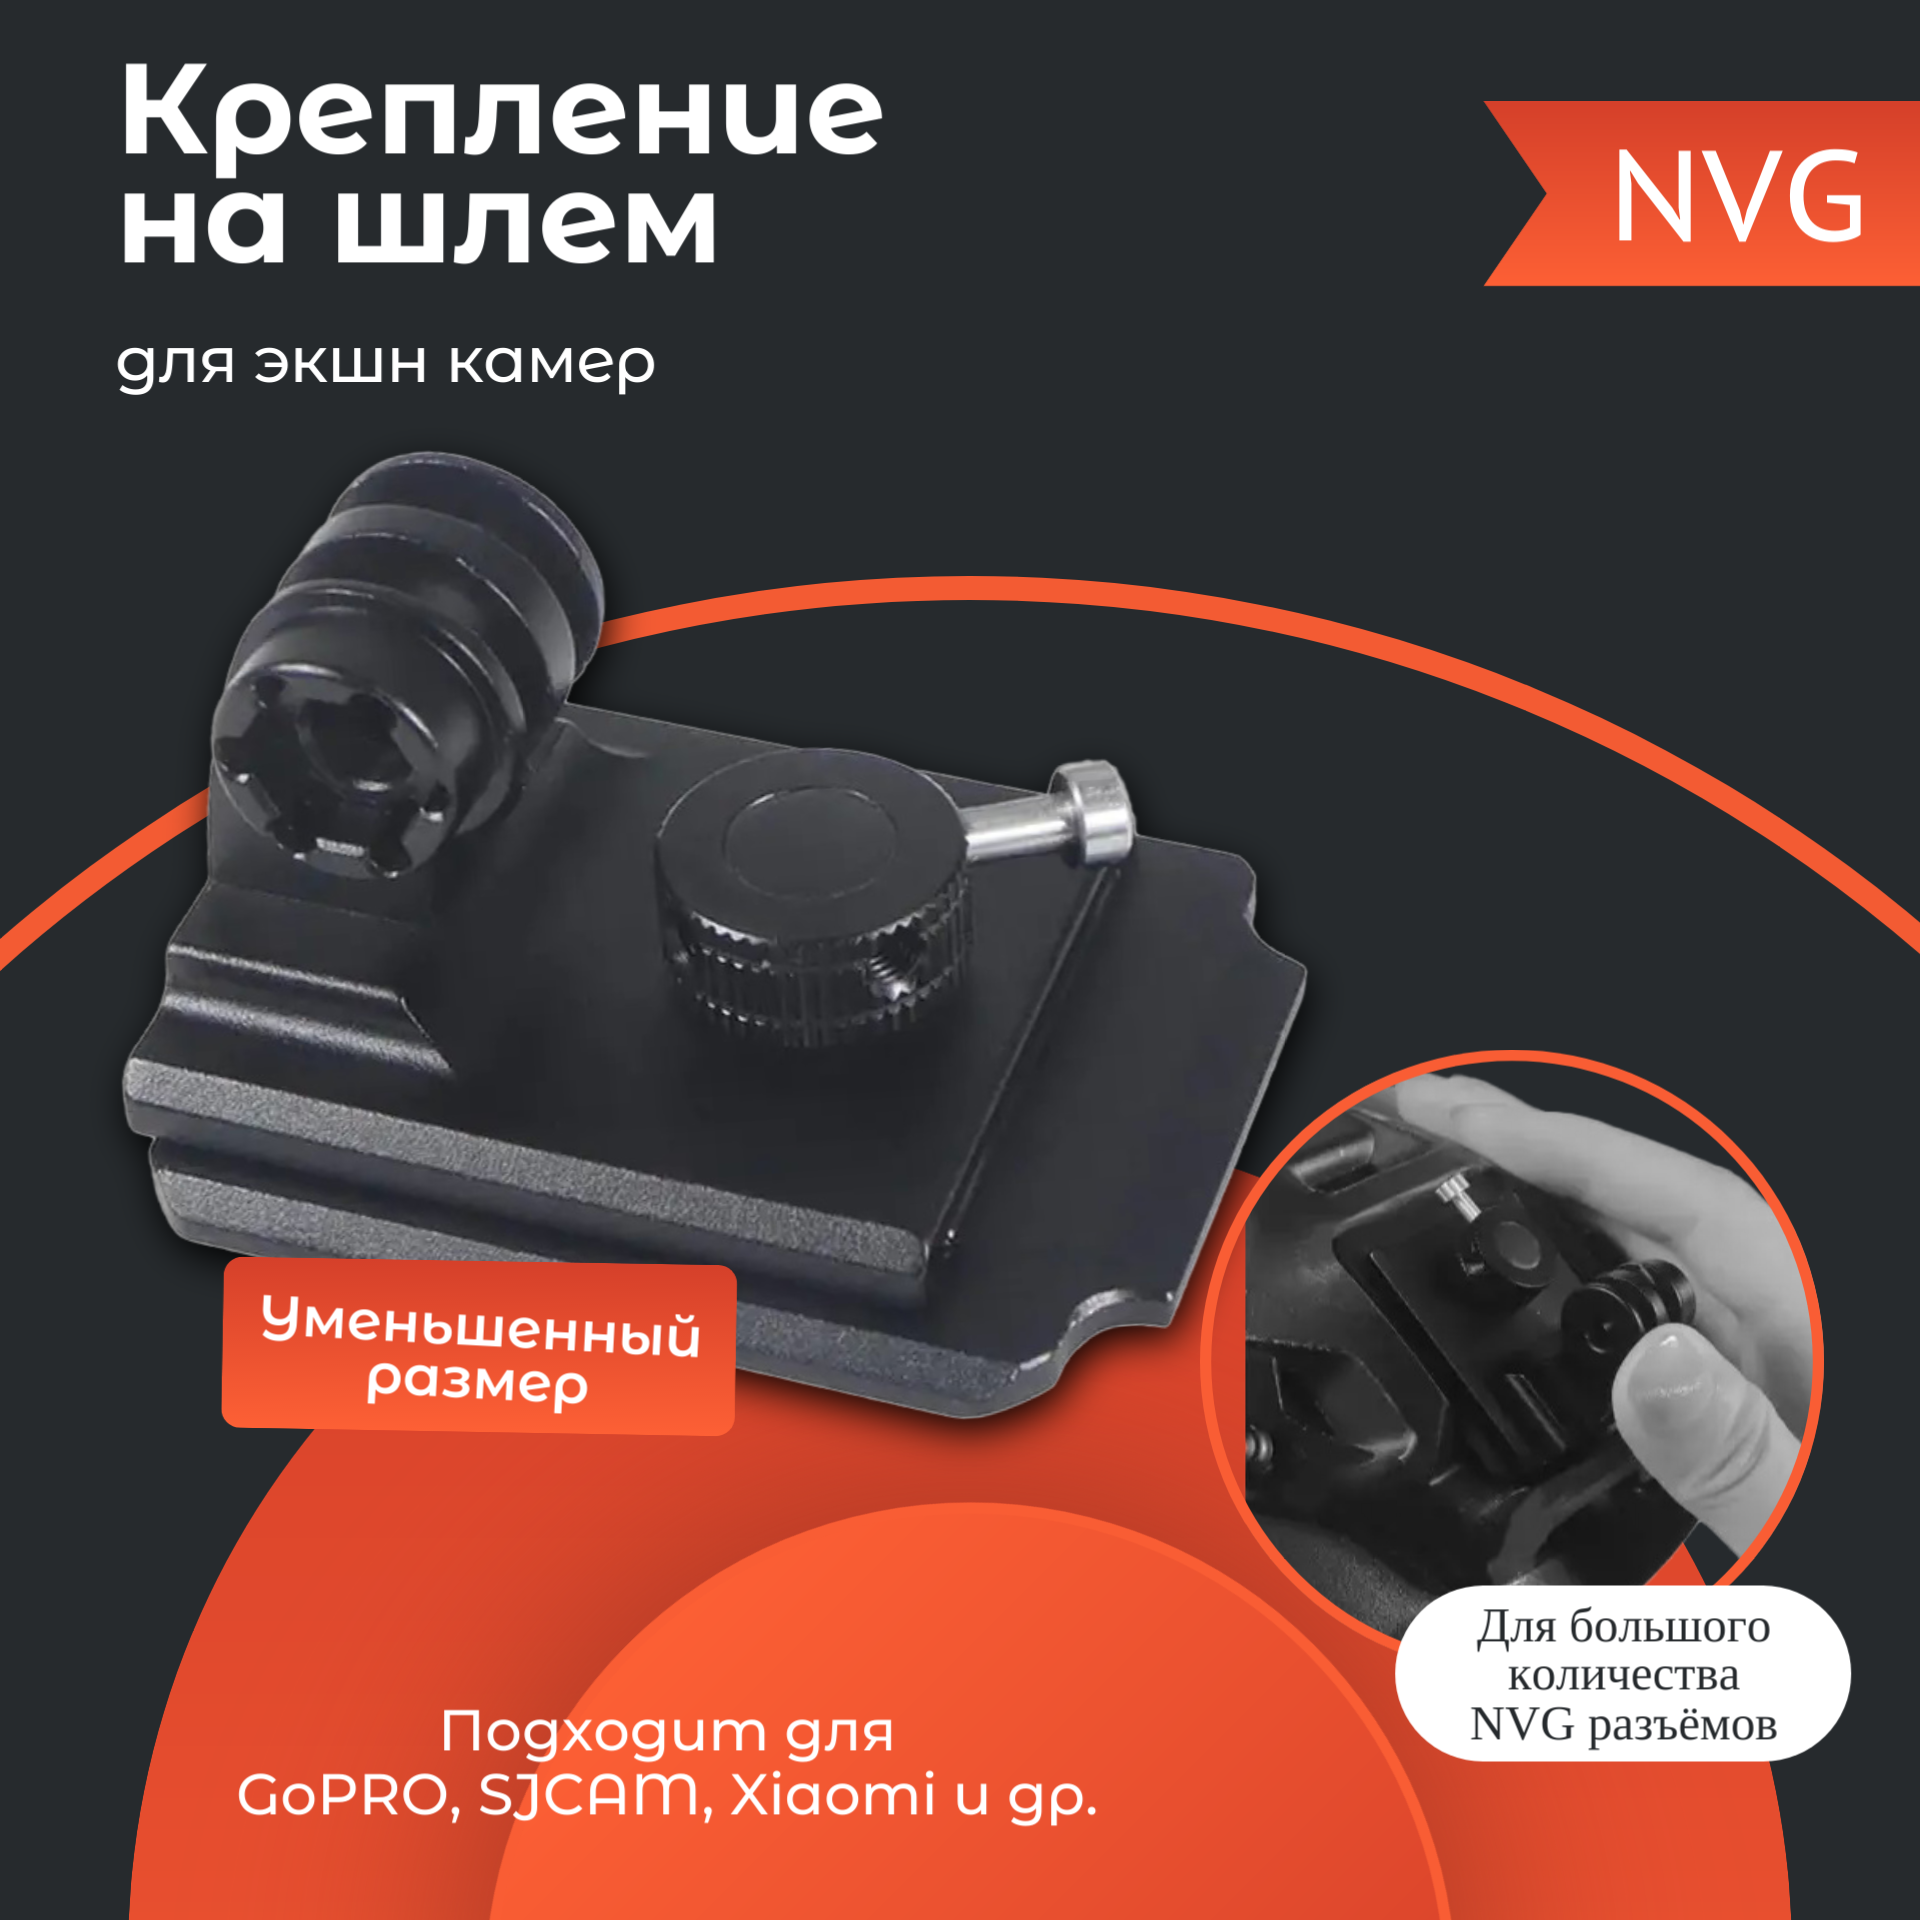 NVG крепление на шлем для экшн камеры GoPro, SJCAM, Xiaomi